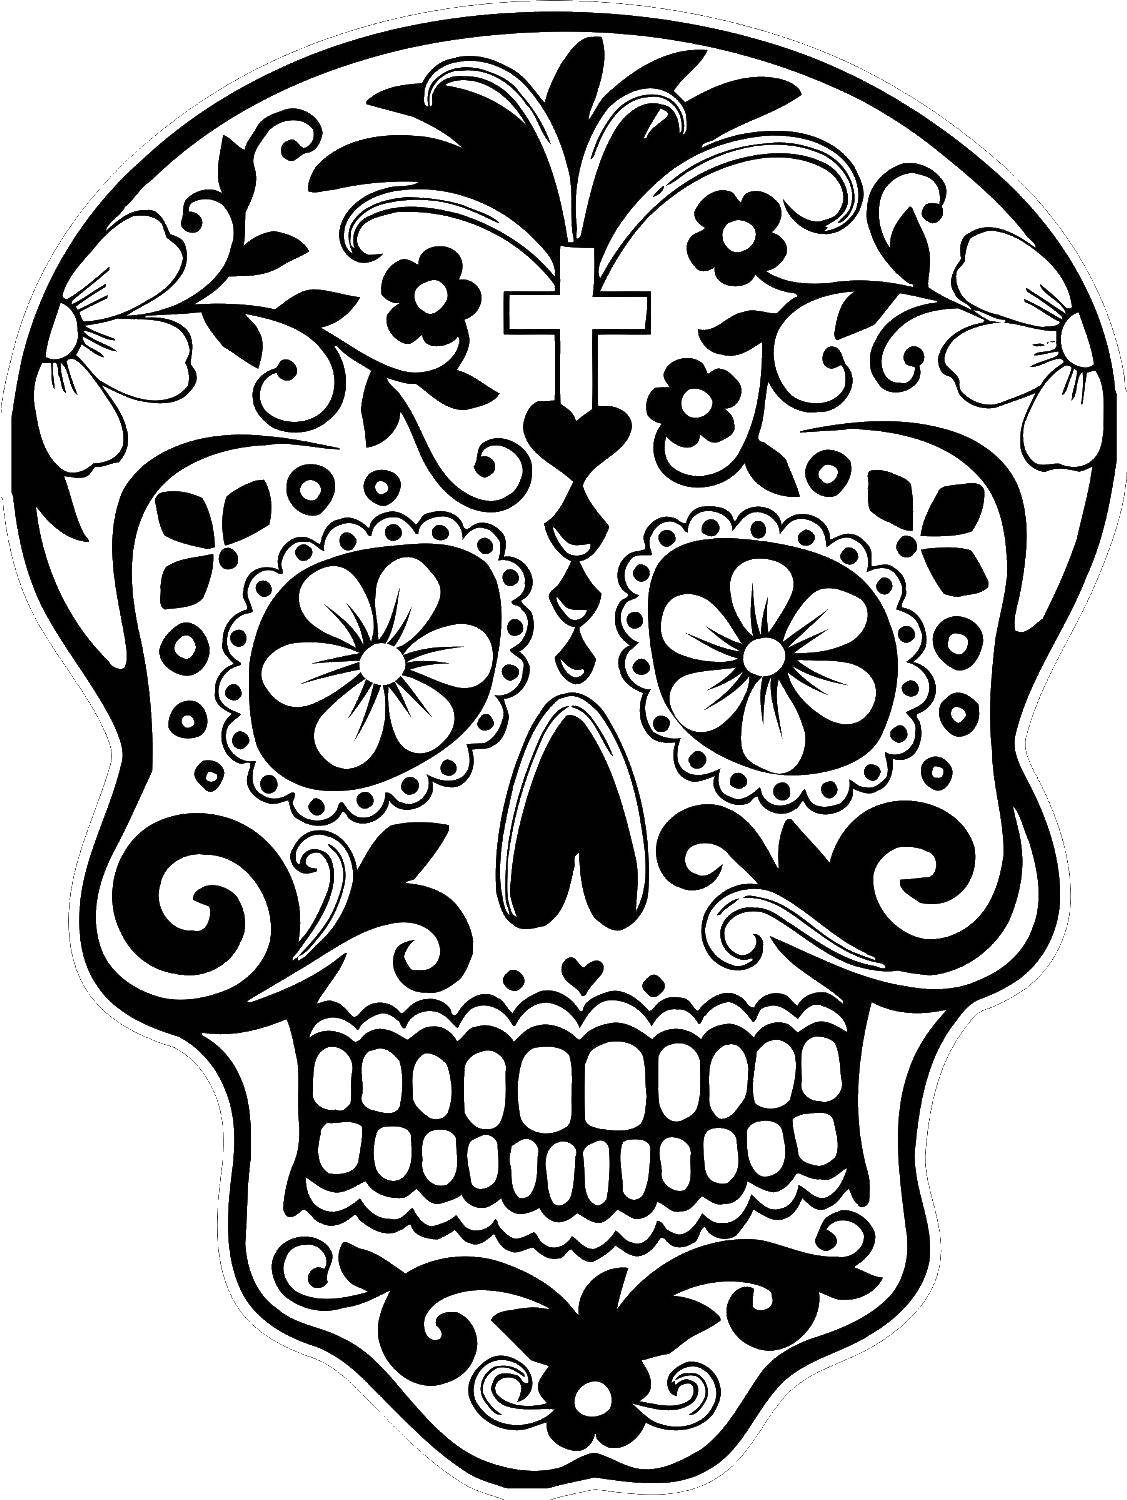 Coloring Patterned skull.. Category skull. Tags:  skull, uzorchiki.